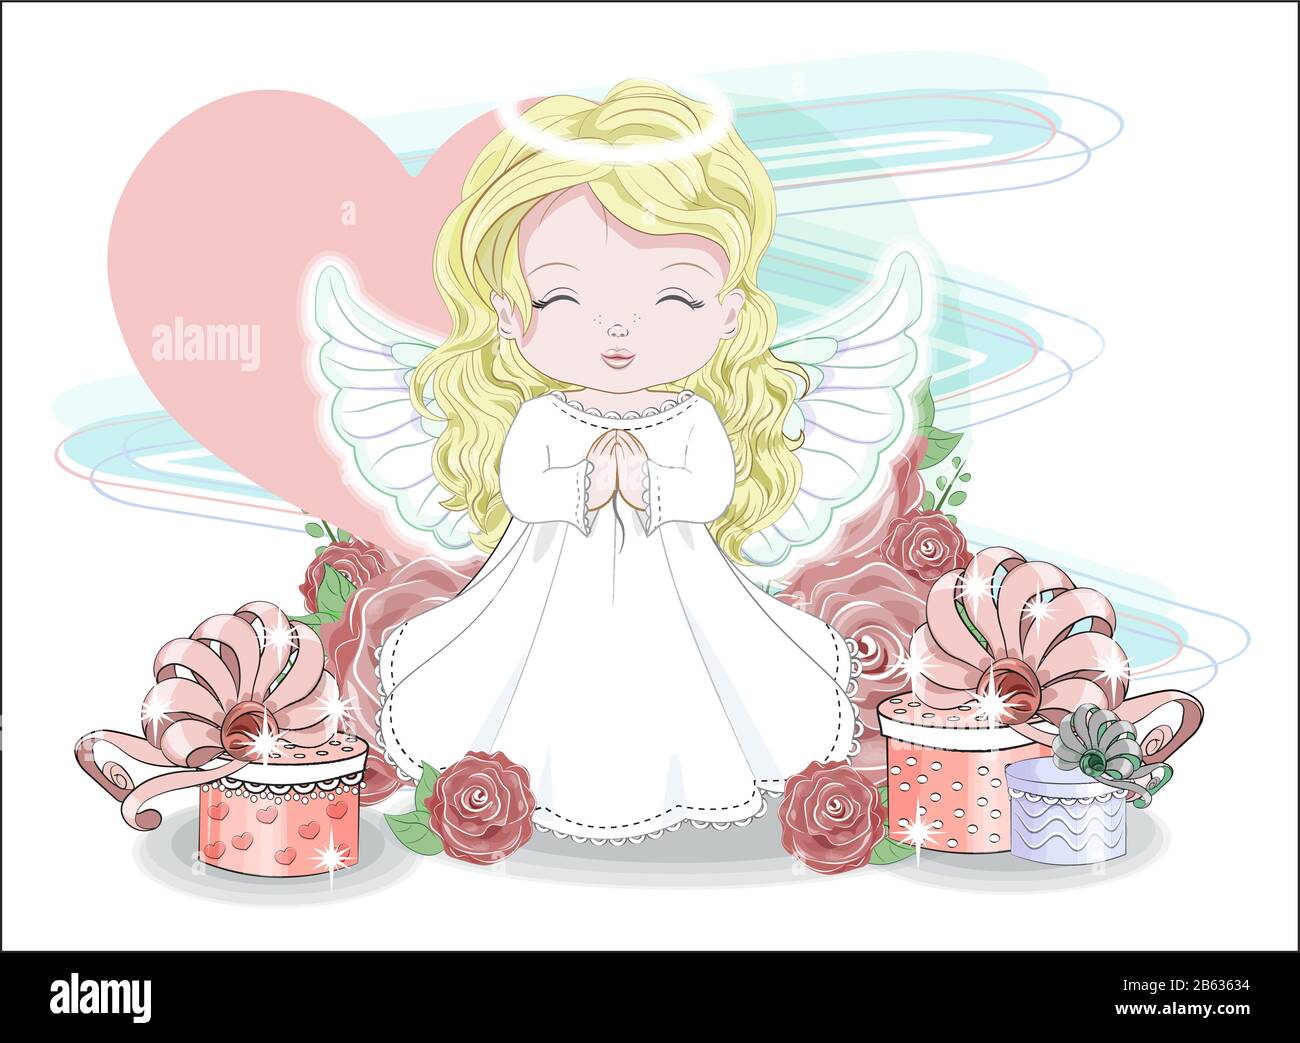 Valentín lindo bebé niña ángel, con su corazón y regalos en Roses. Imagen  de dibujo a mano alzada, del estilo de dibujos animados para t-shirt el  desgaste de la moda, diseño de